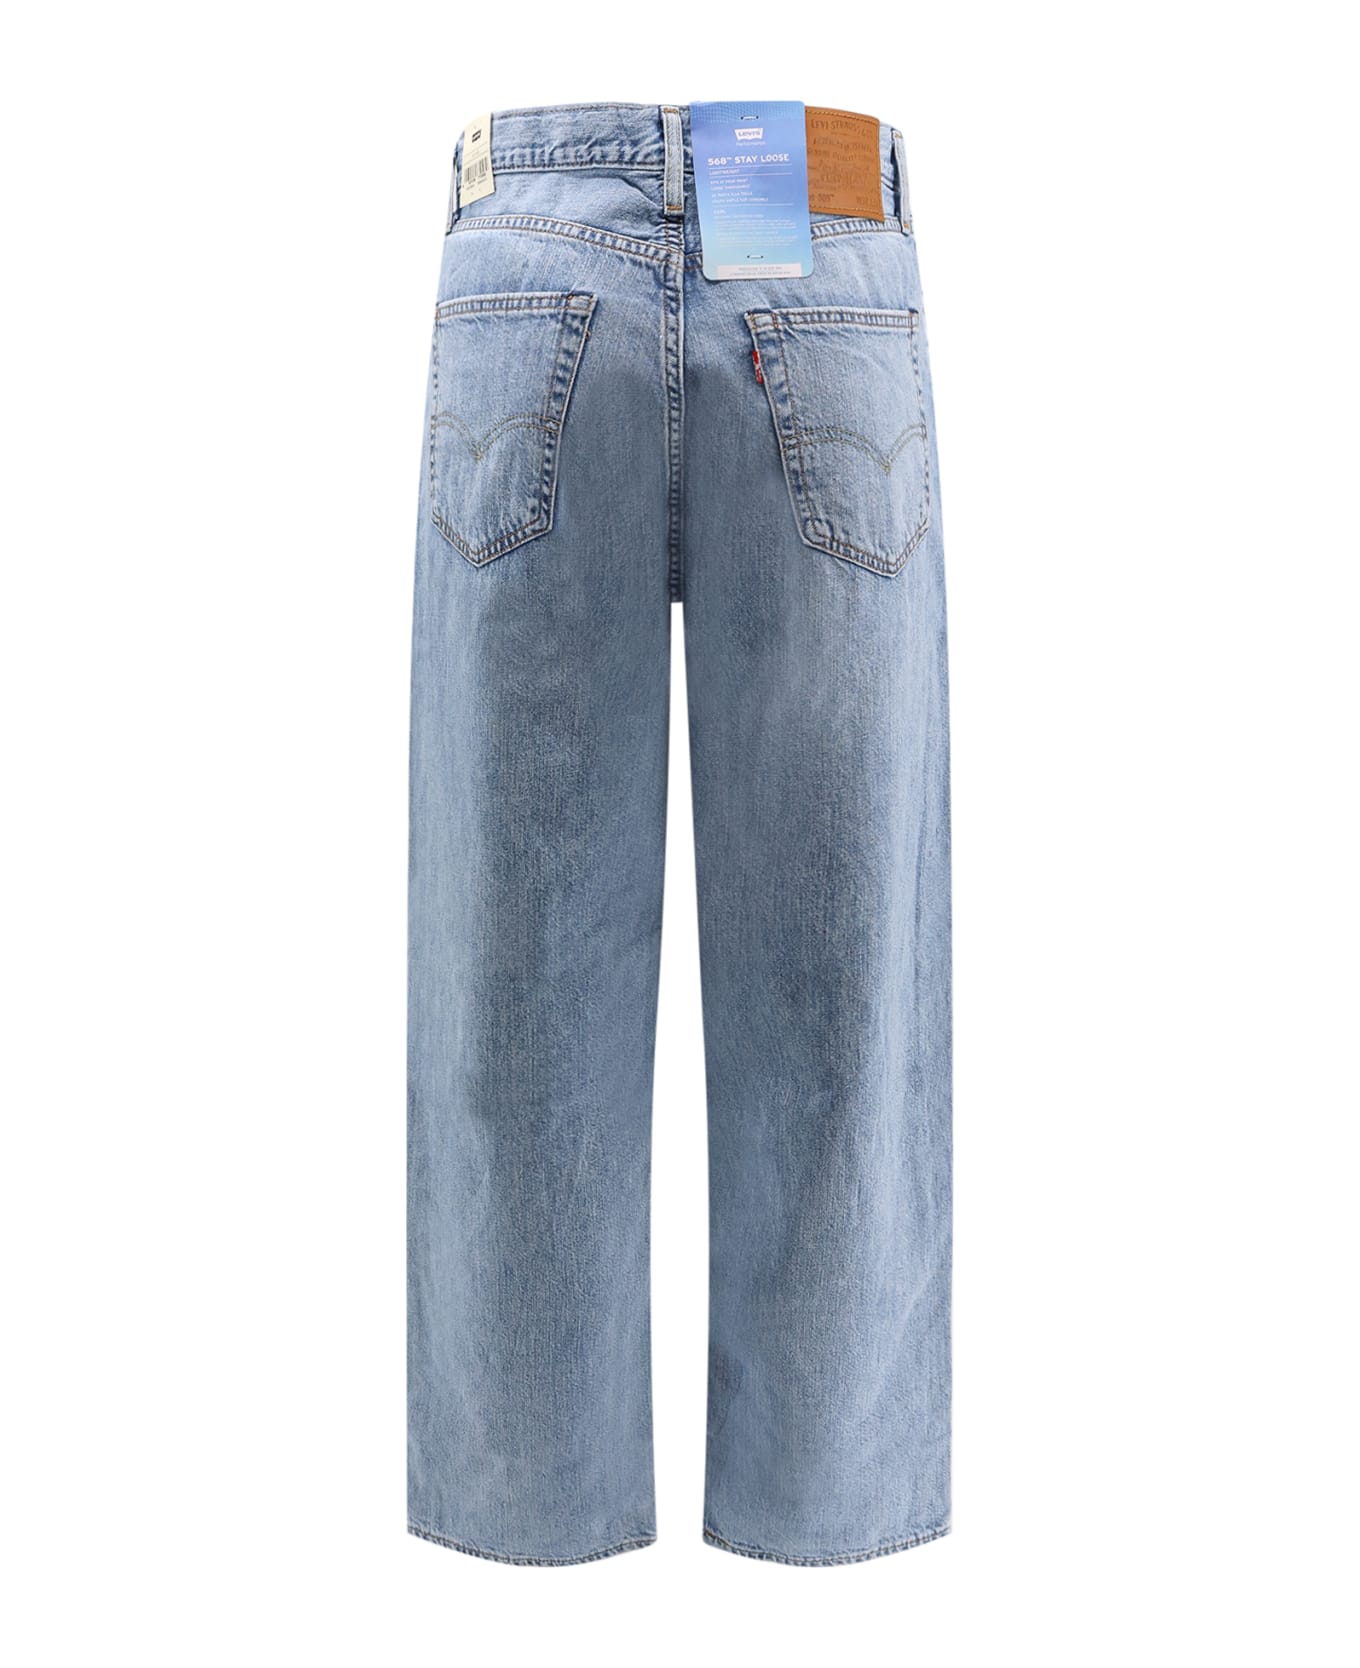 Levi's 568 Jeans - Blue